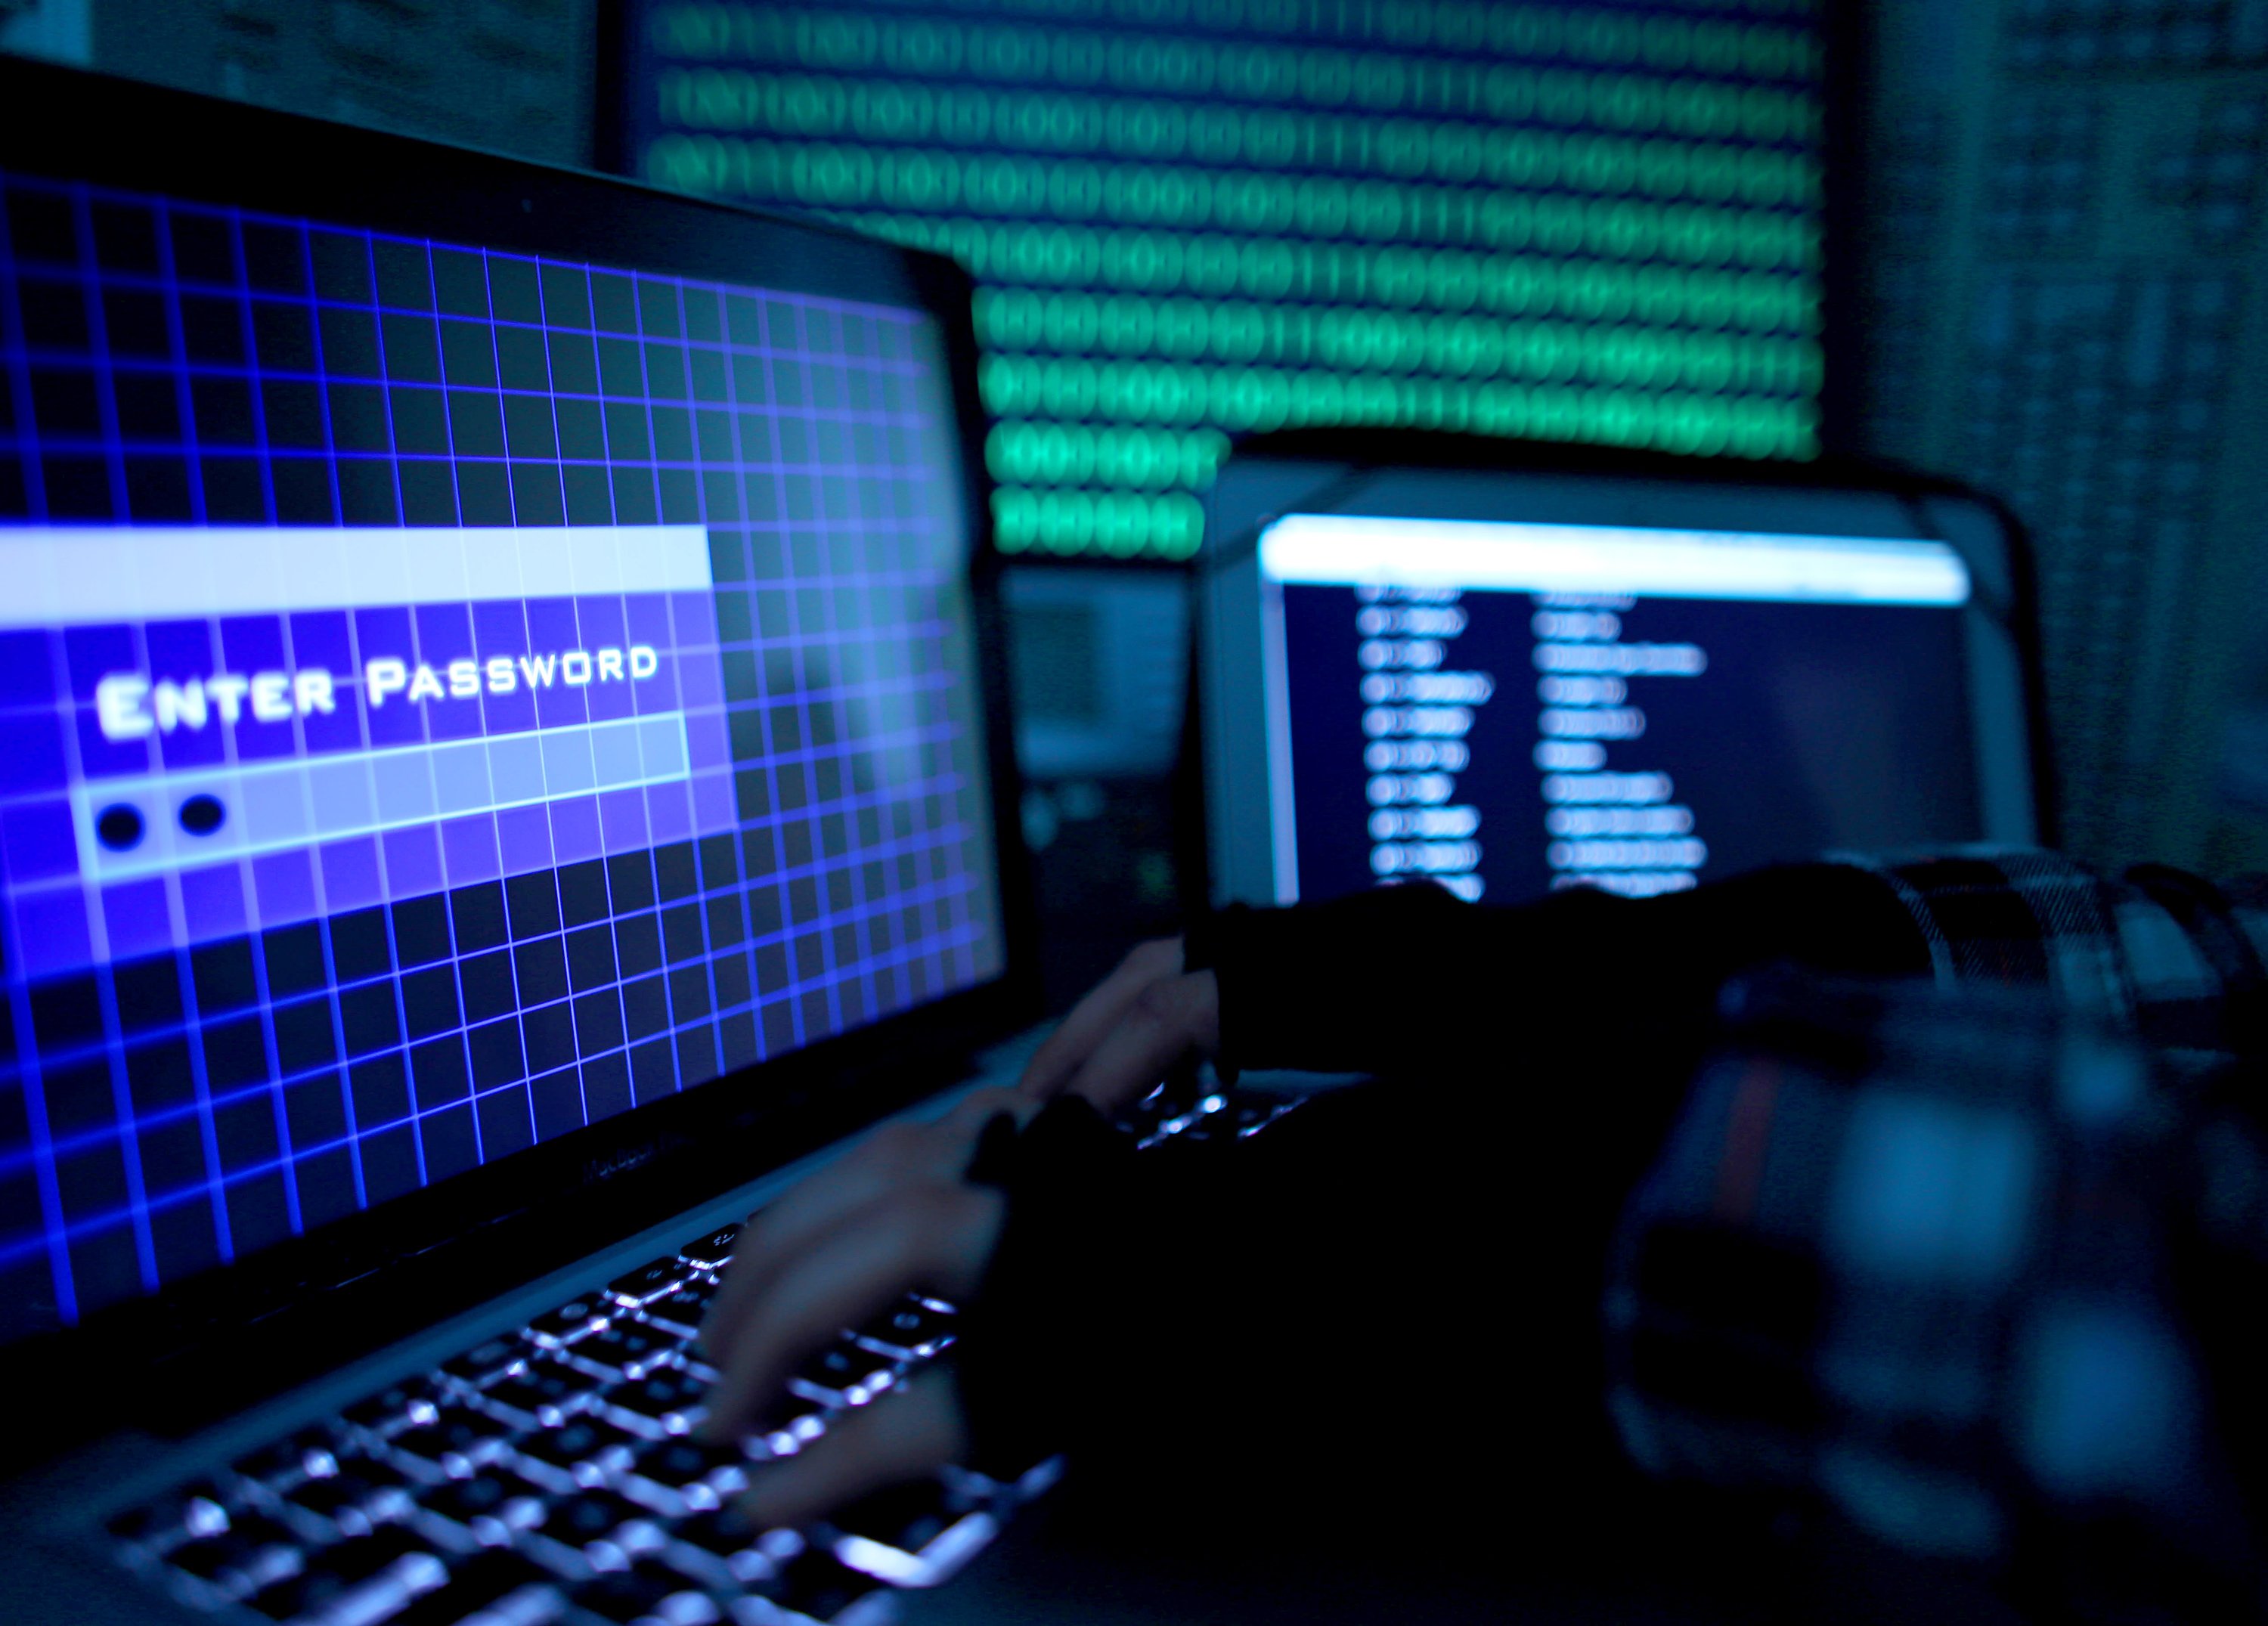 Die Ransomware WannaCry verschlüsselt die Computerdaten und gibt sie erst nach Zahlung eines Lösegeldes wieder frei.